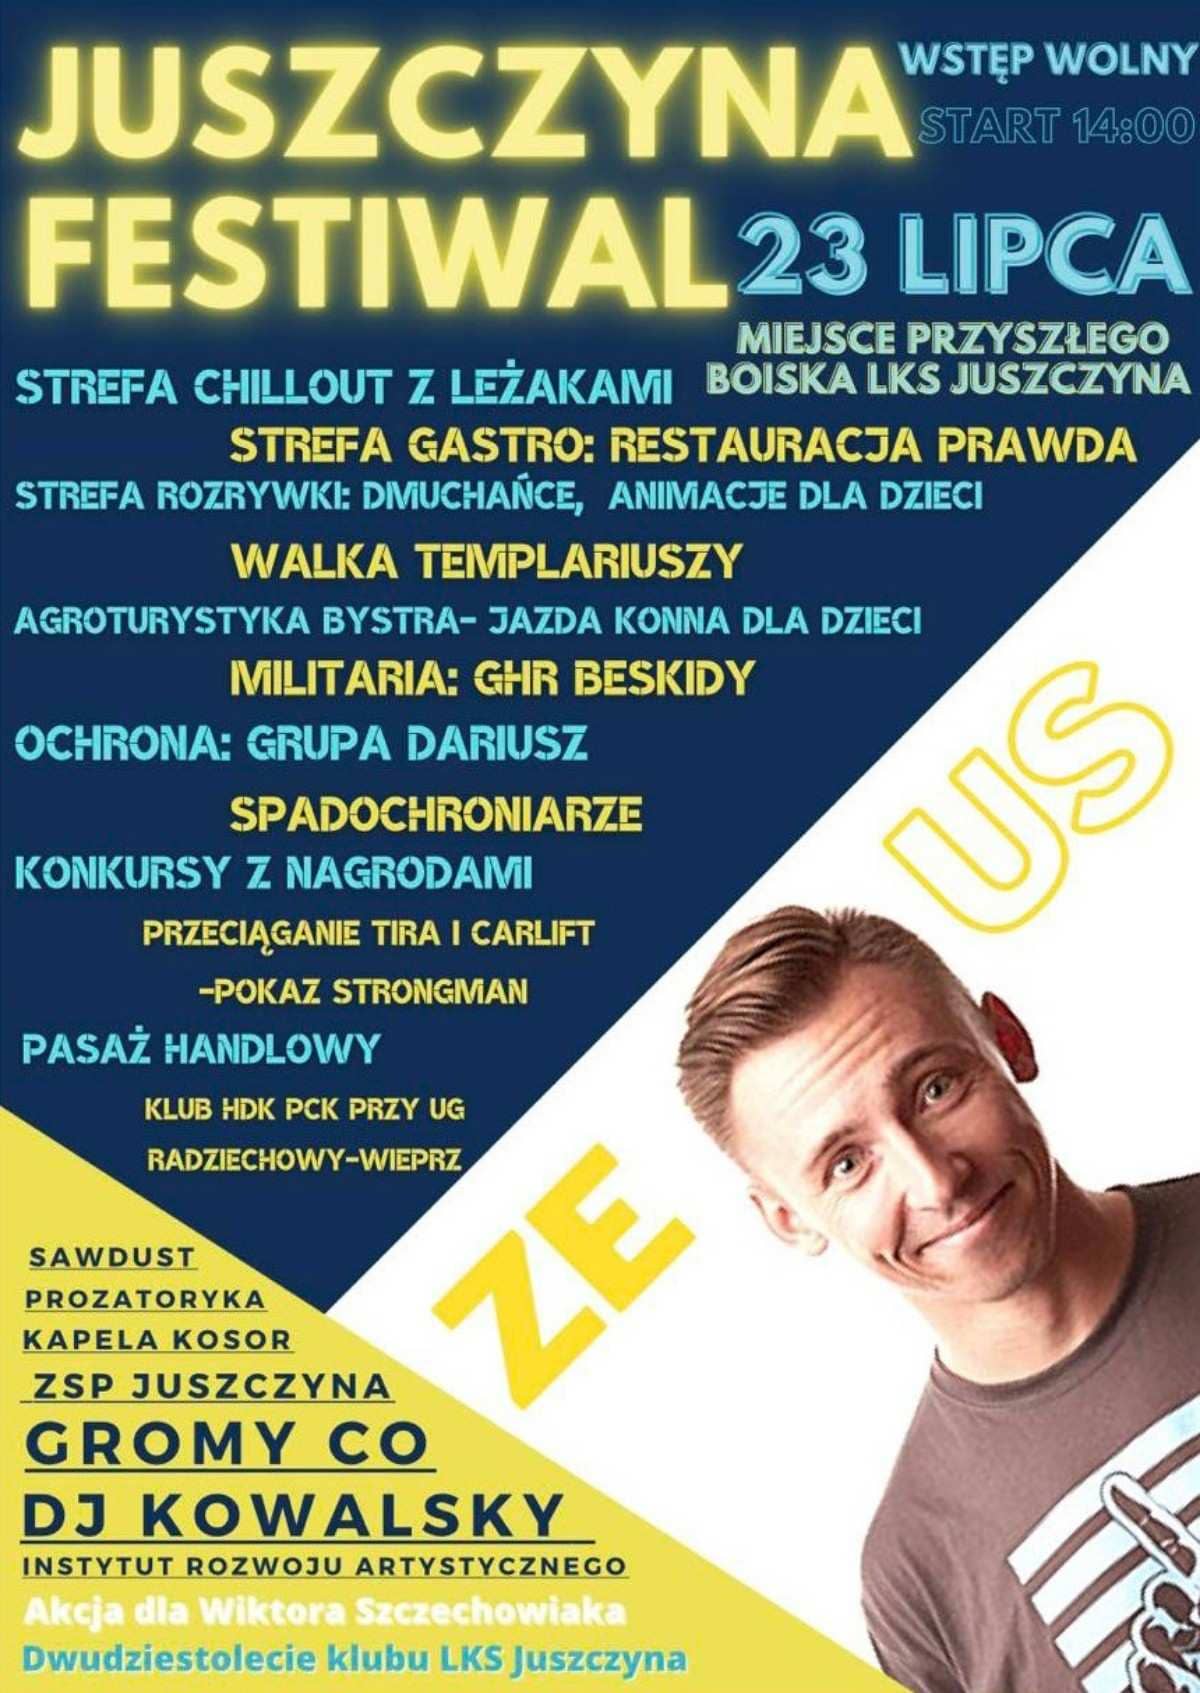 Juszczyna Festiwal